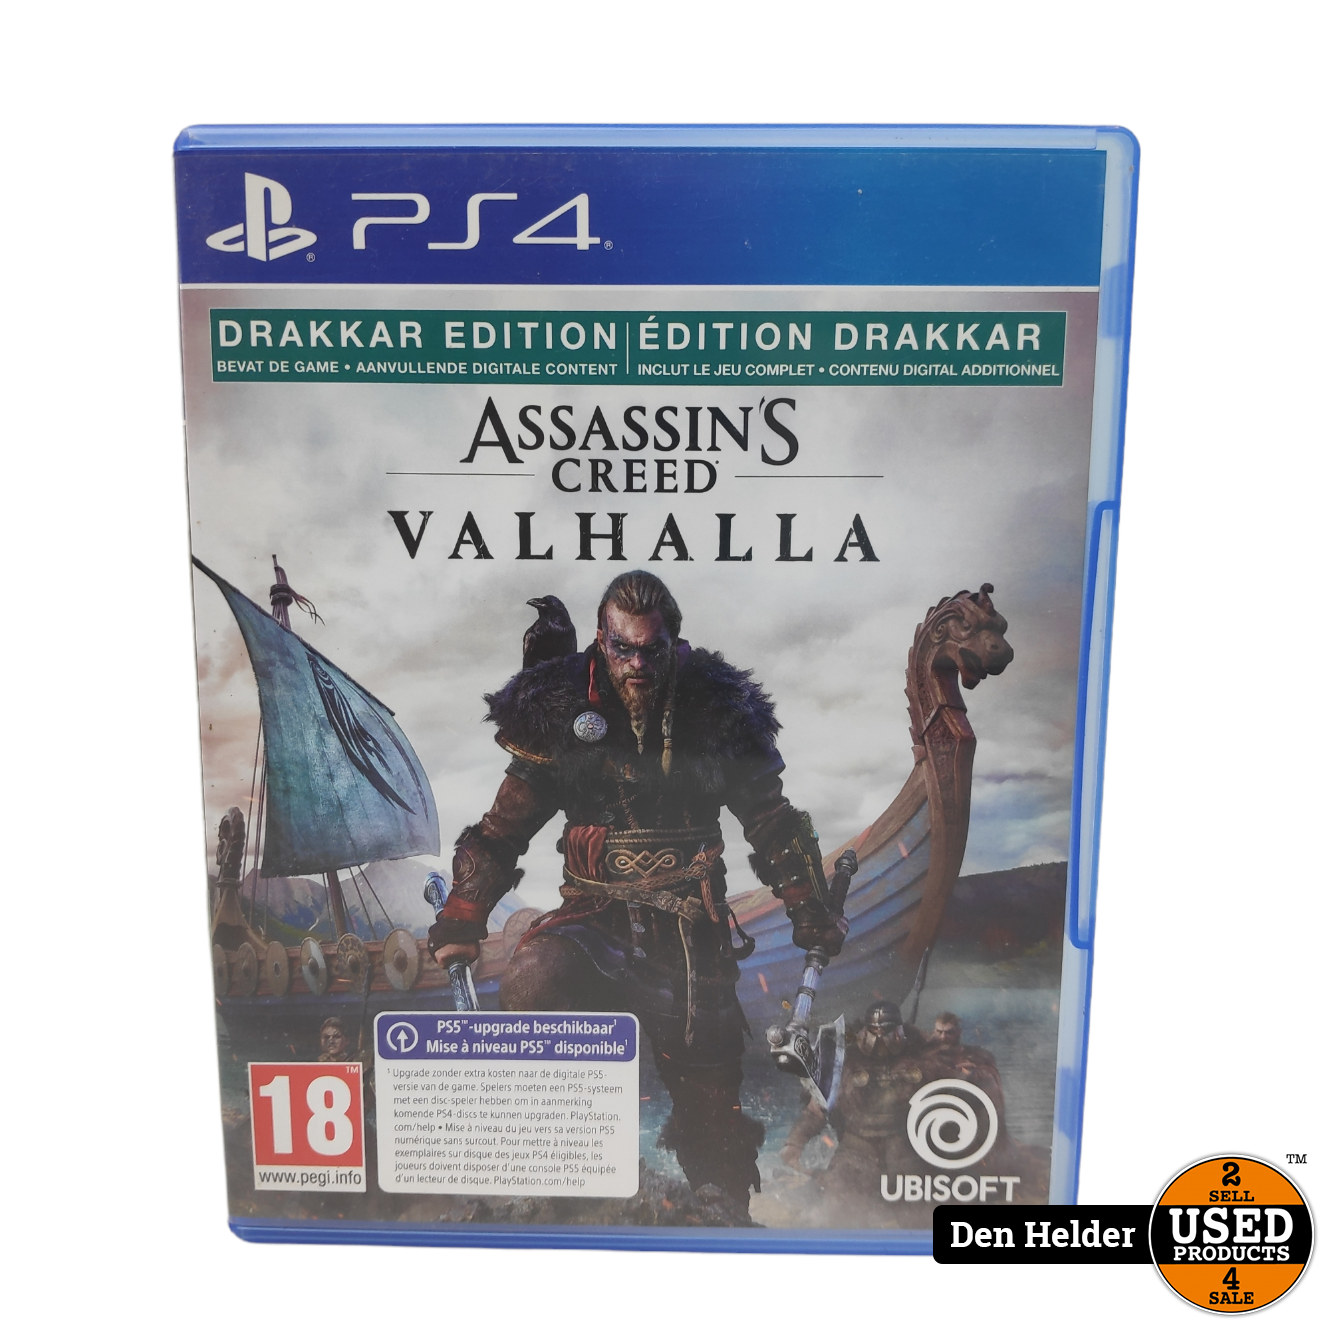 Gering spek Veel gevaarlijke situaties Assassin's Creed Valhalla PS4 Game - In Nette Staat - Used Products Den  Helder